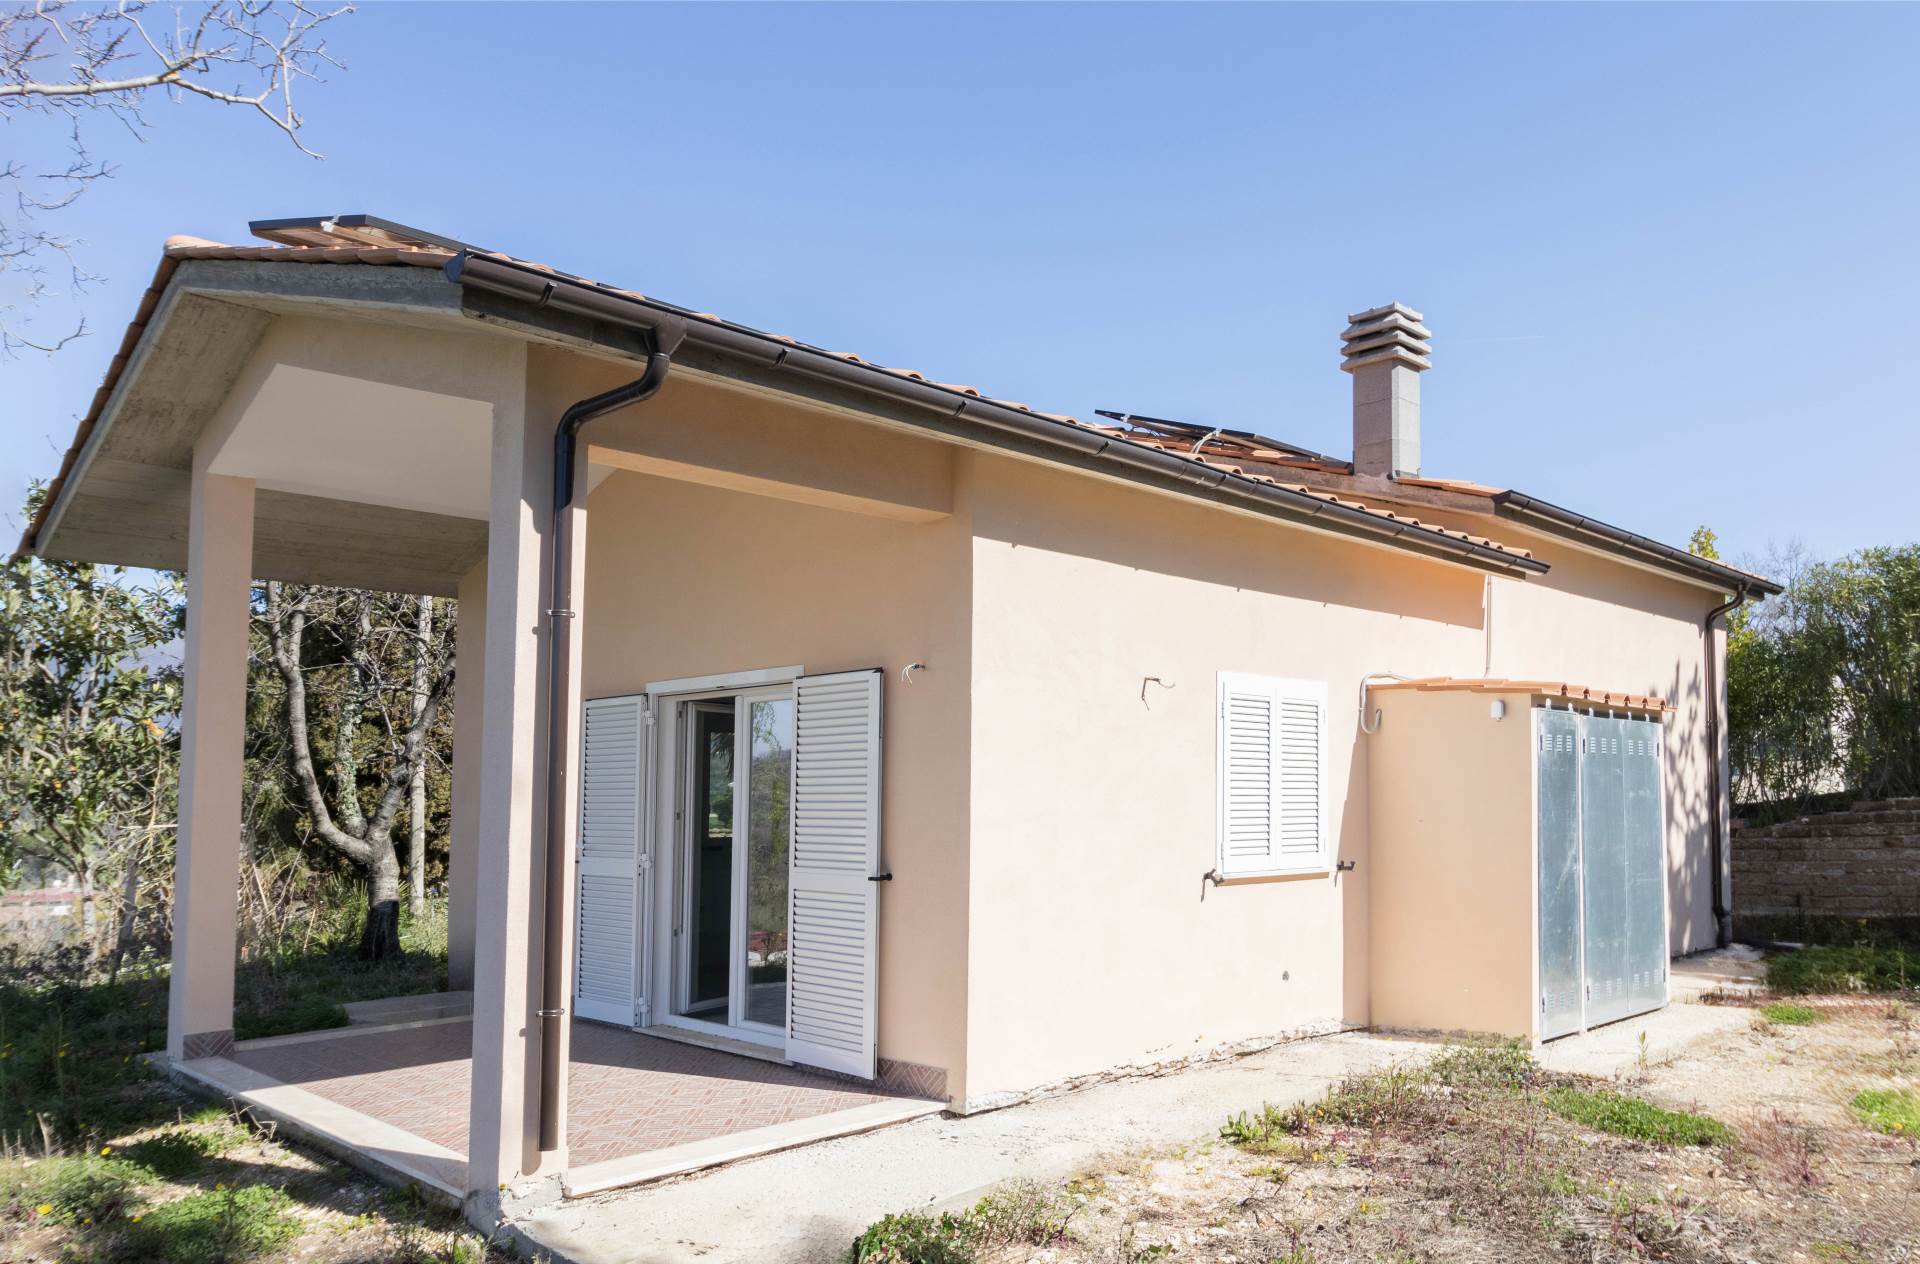 Villa in vendita a Poggio Nativo, 3 locali, prezzo € 142.000 | PortaleAgenzieImmobiliari.it